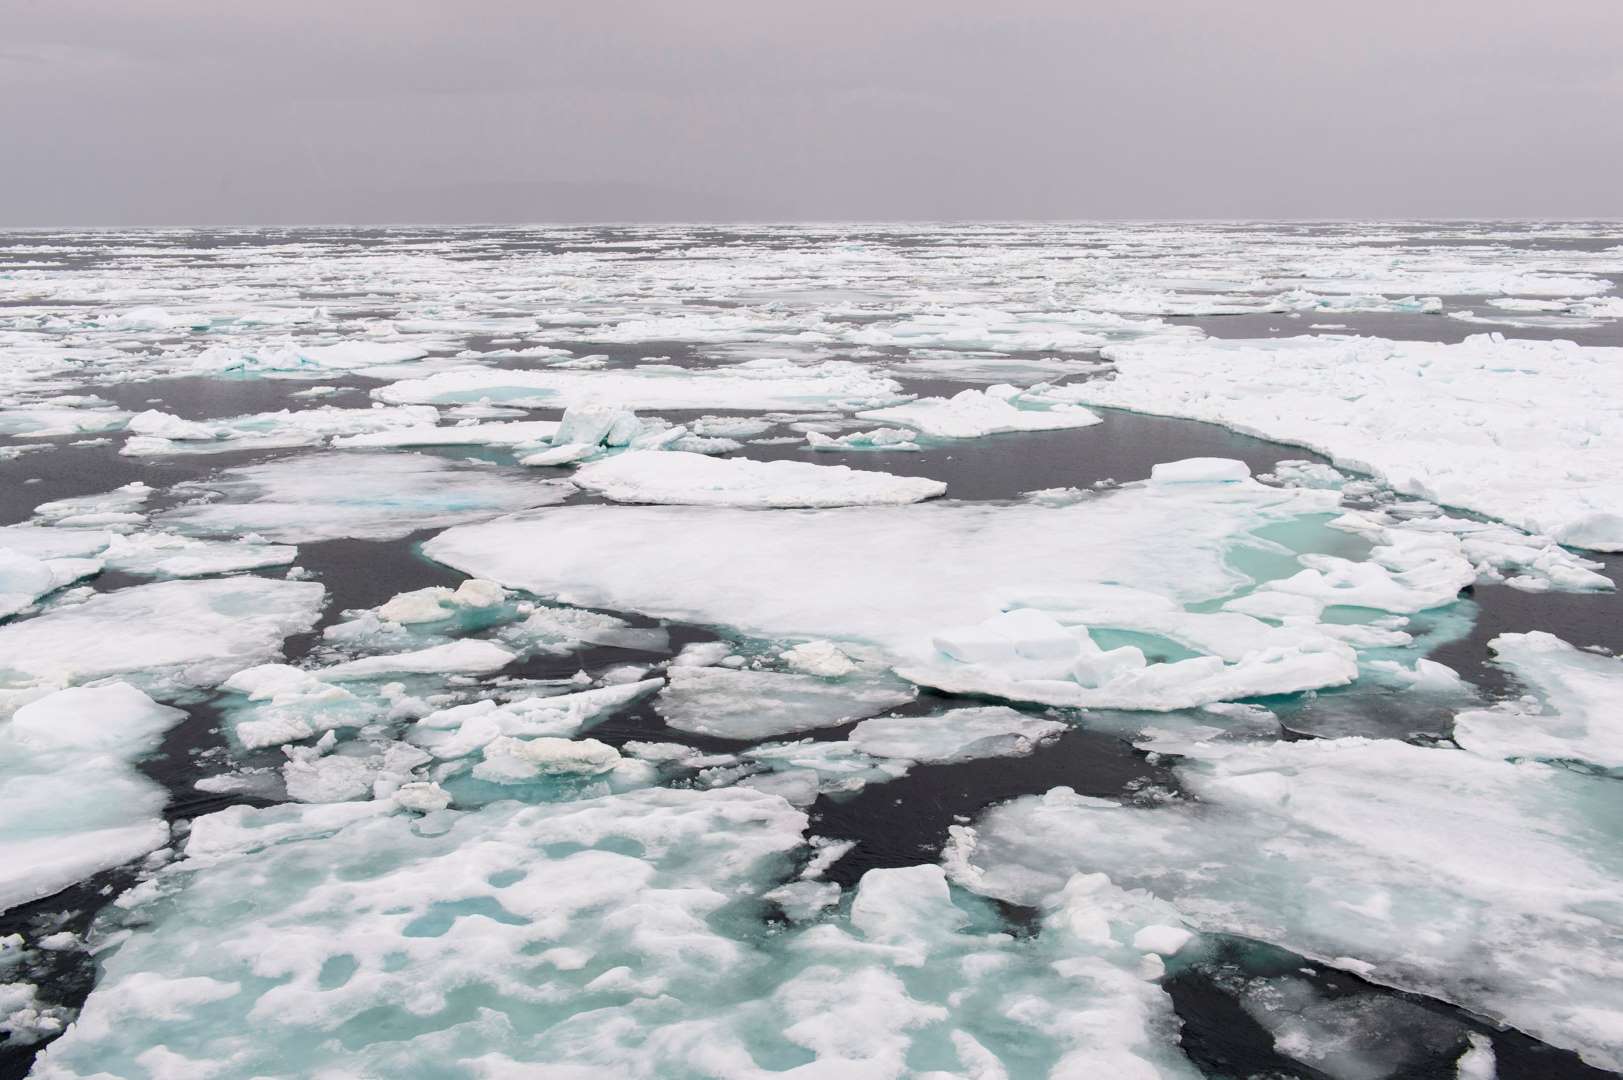 Arktický led při svém tání se láme na tisíce menších kousků